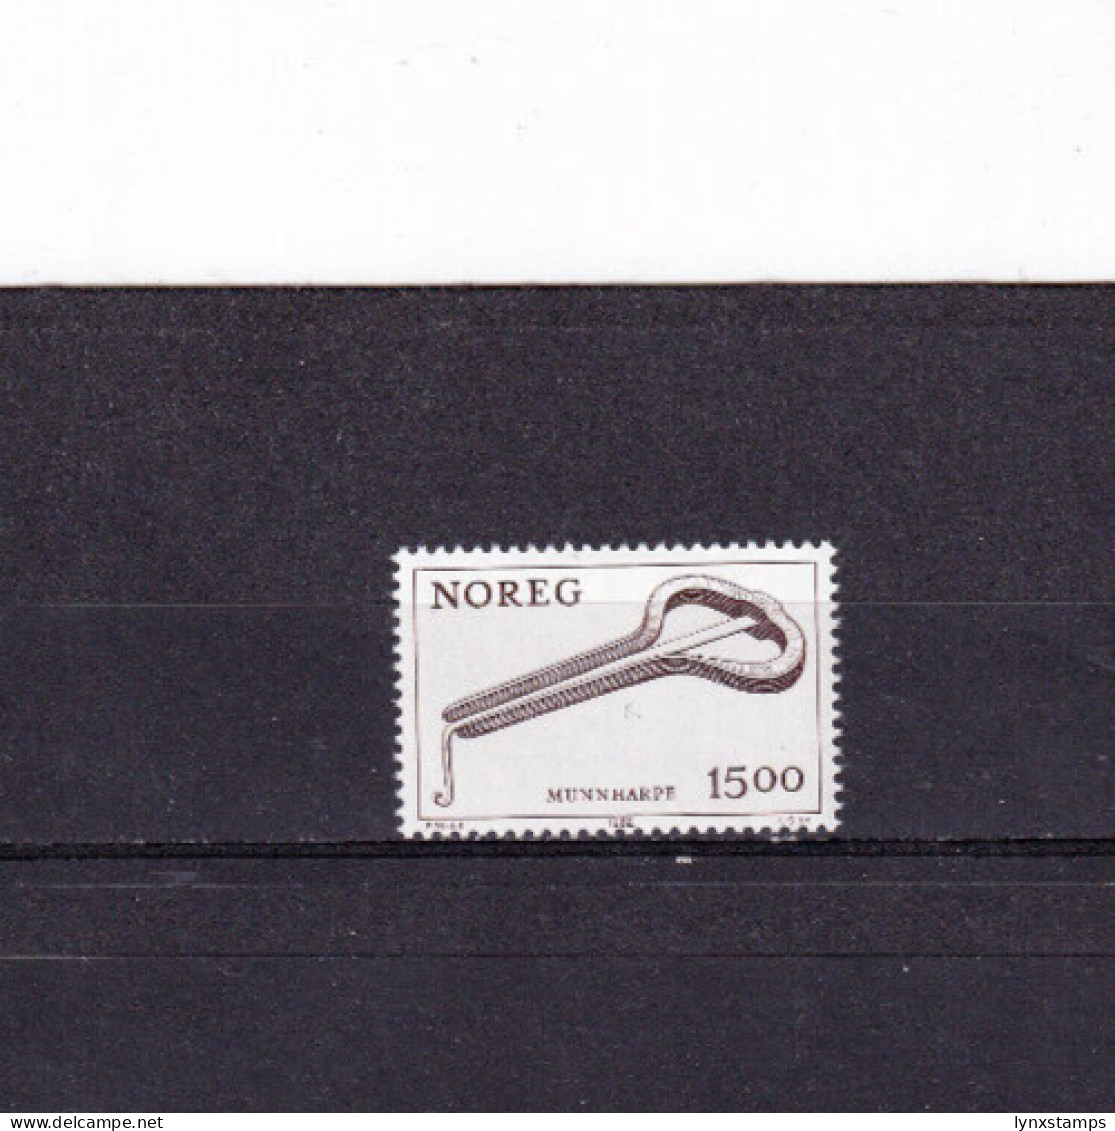 LI04 Norway 1982 Musical Instrument Mint Stamps - Ongebruikt